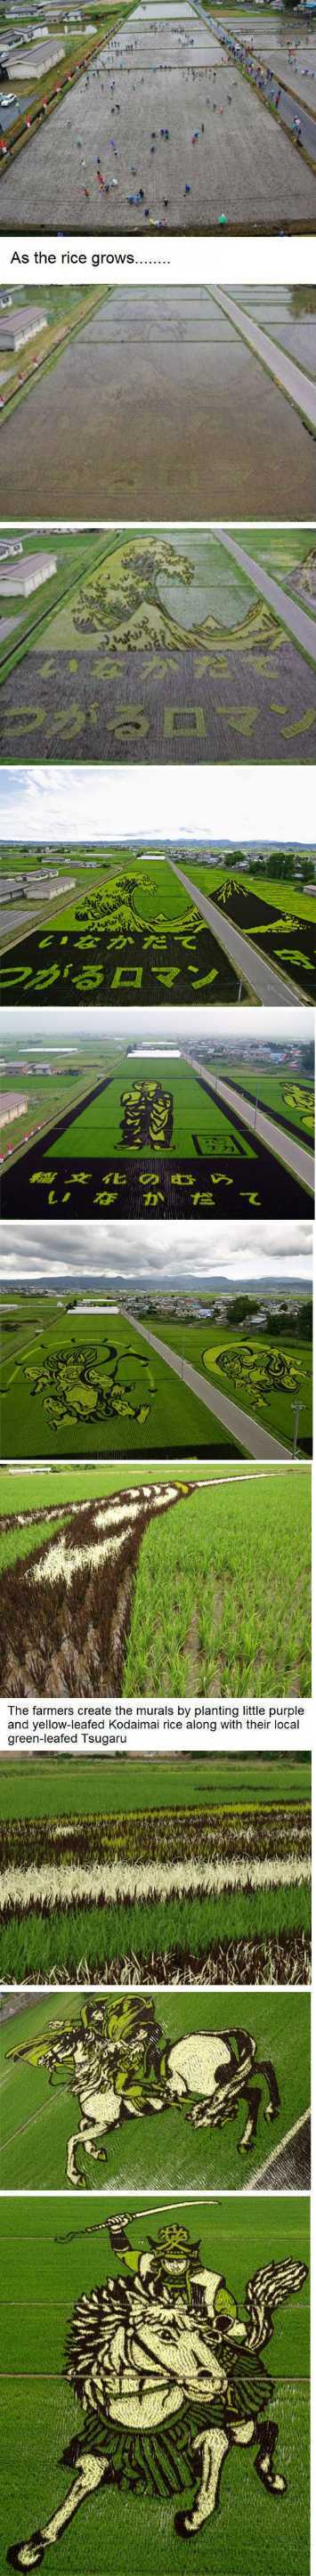 rice field art - meme